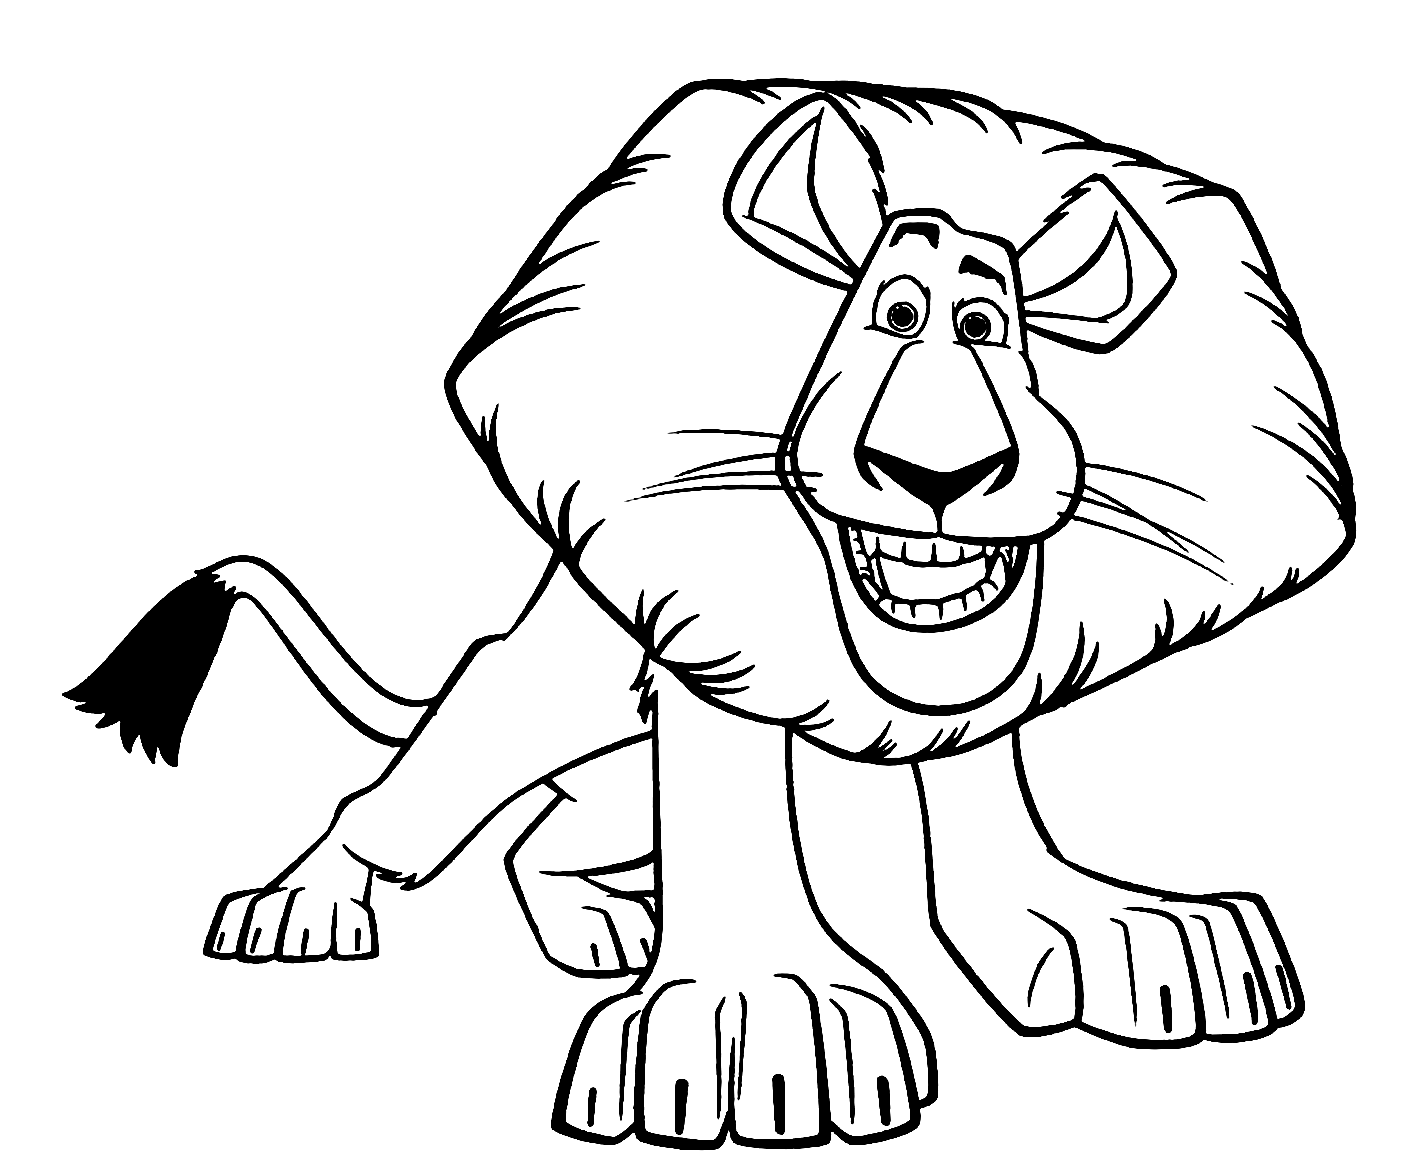 Alex the Lion